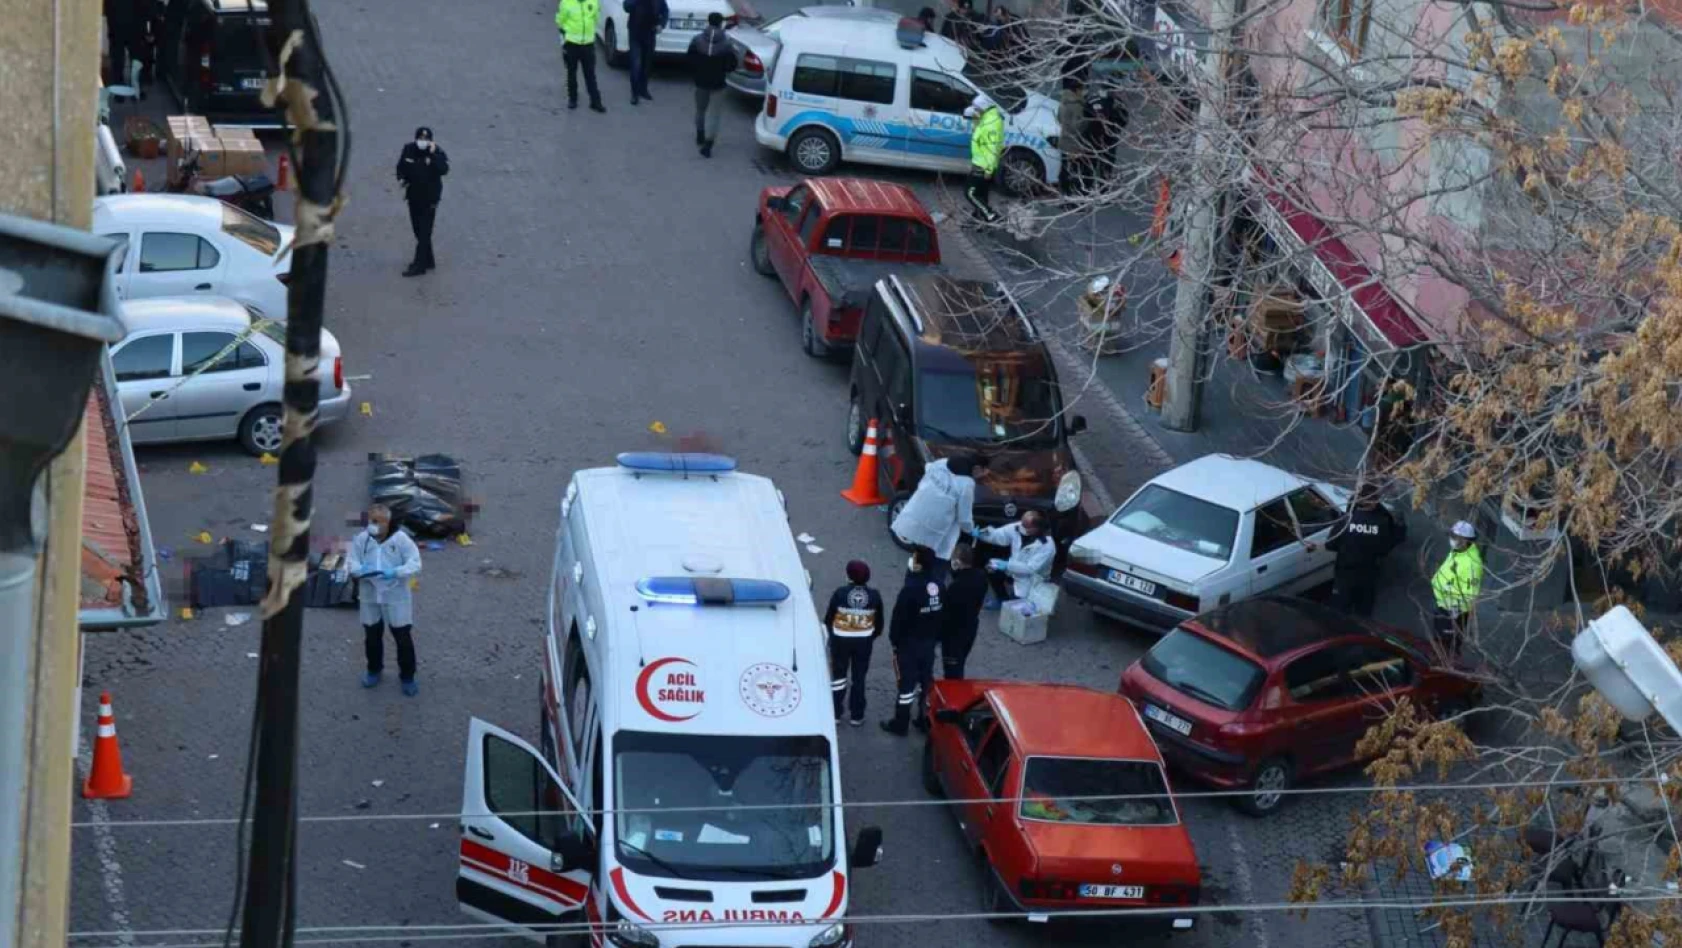 Kayseri'de 3 kişiyi Öldüren Sanığın Davası Sürüyor